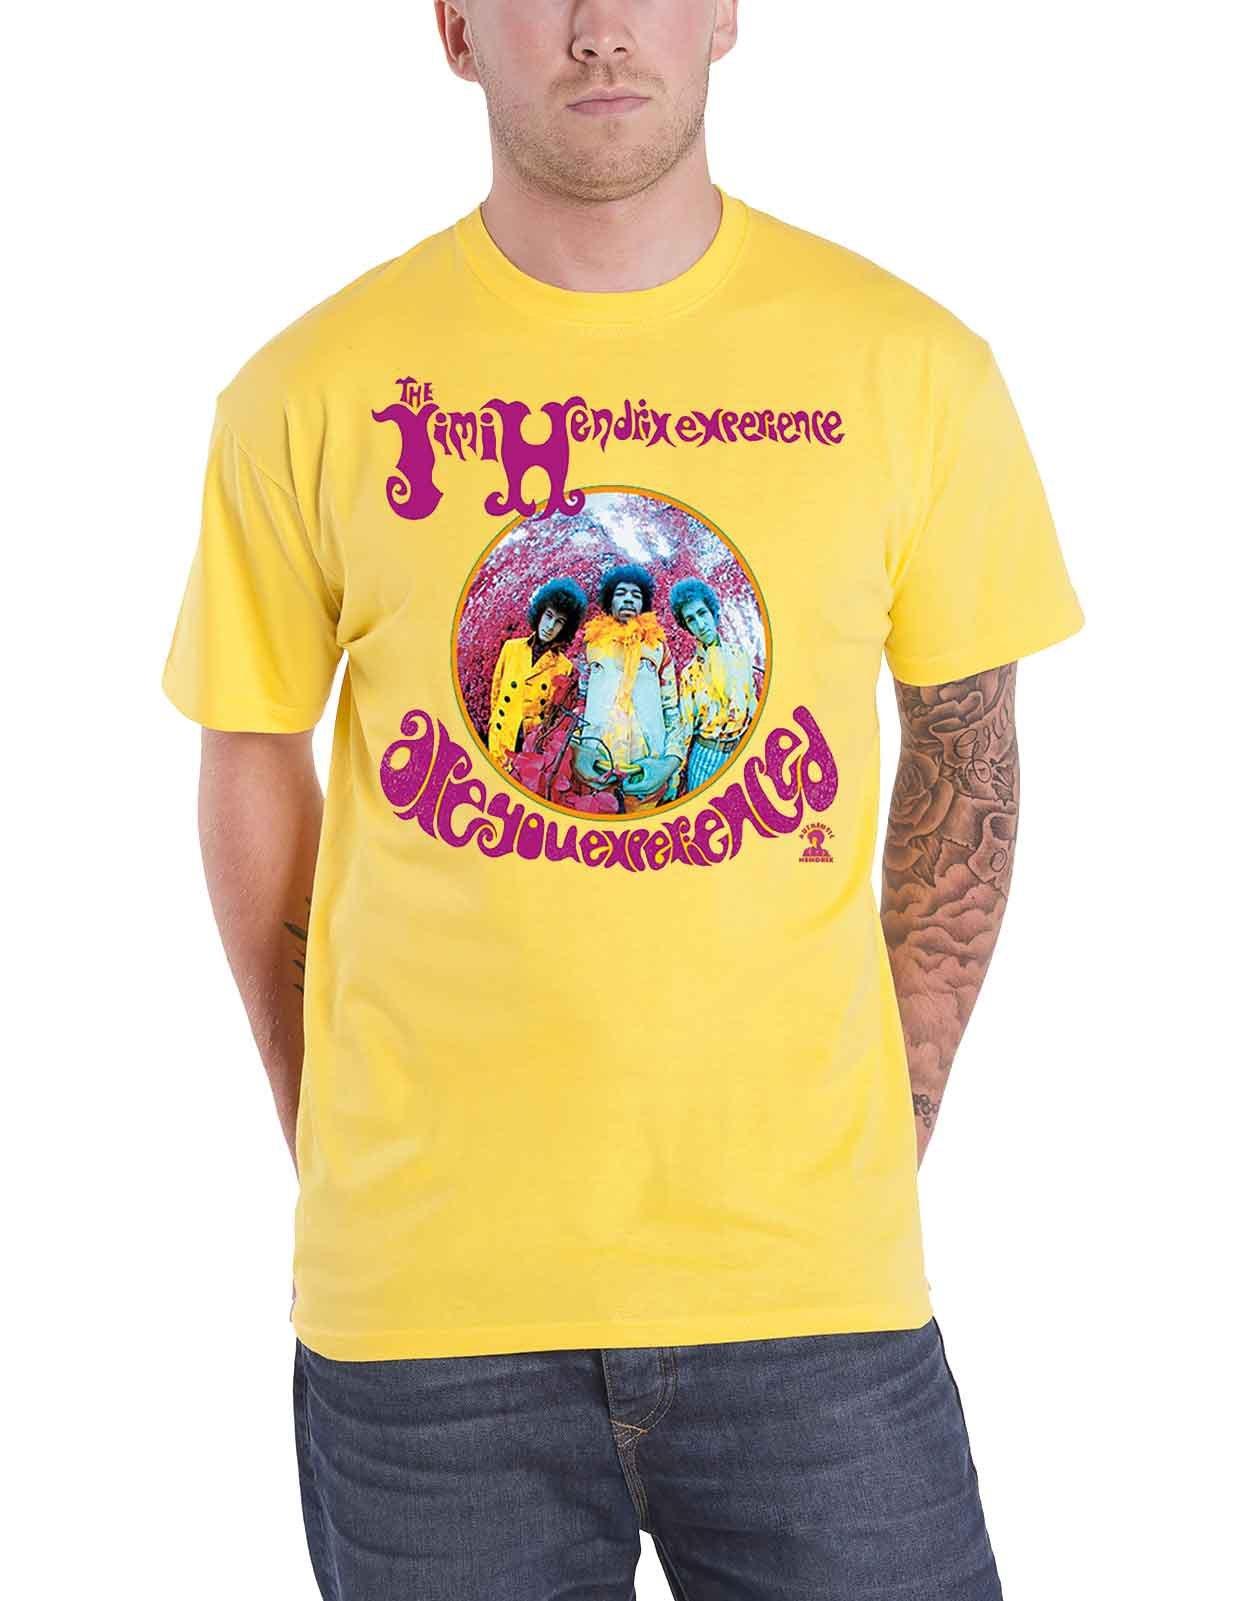 футболка вы опытный jimi hendrix черный Футболка «Вы опытный» Jimi Hendrix, желтый